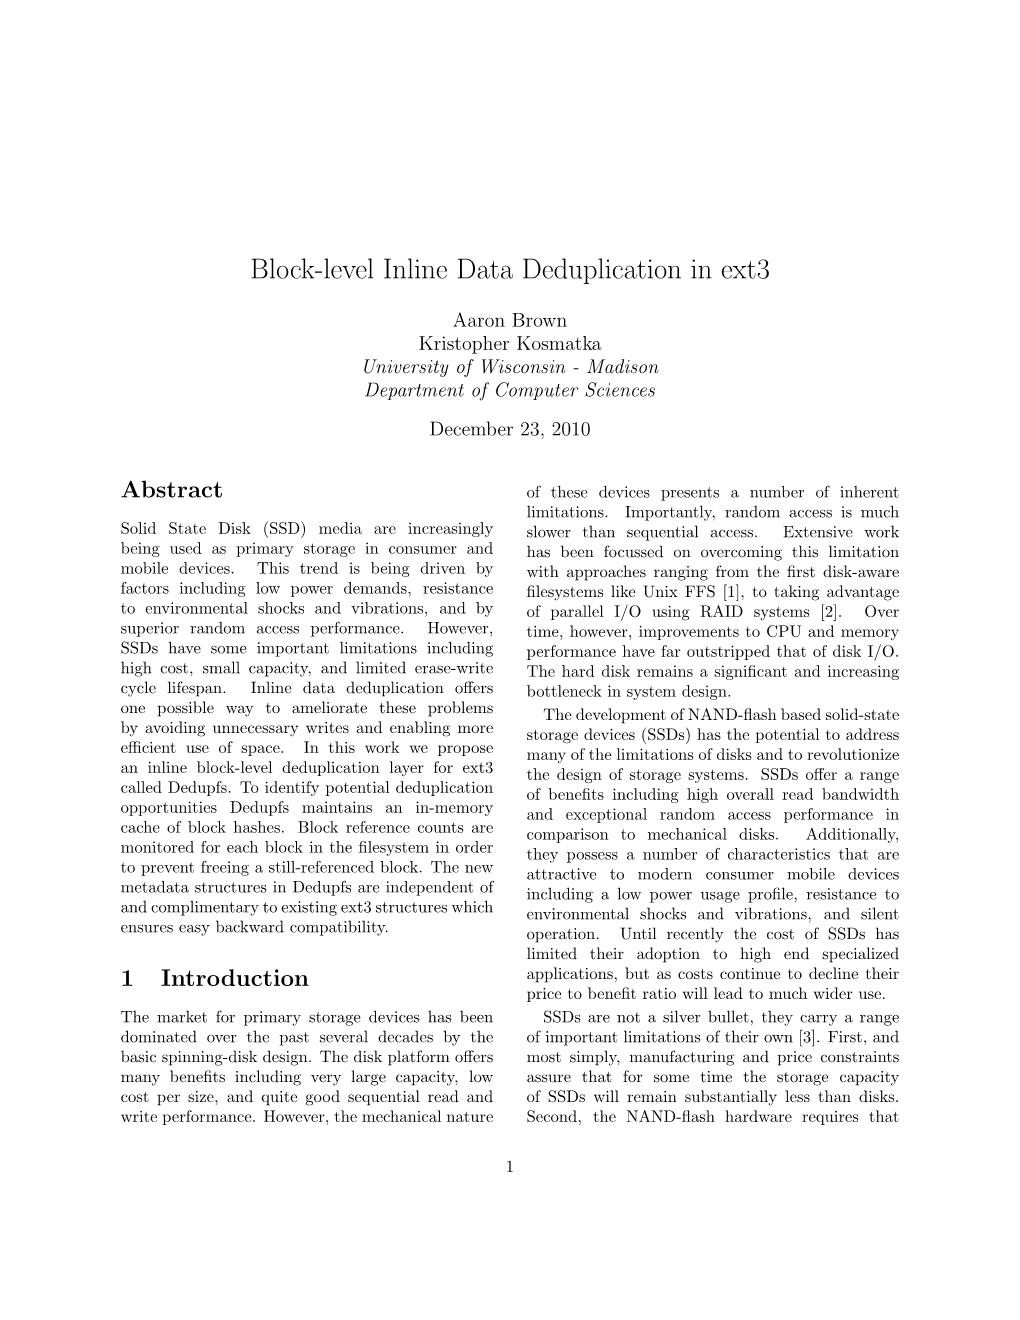 Block-Level Inline Data Deduplication in Ext3